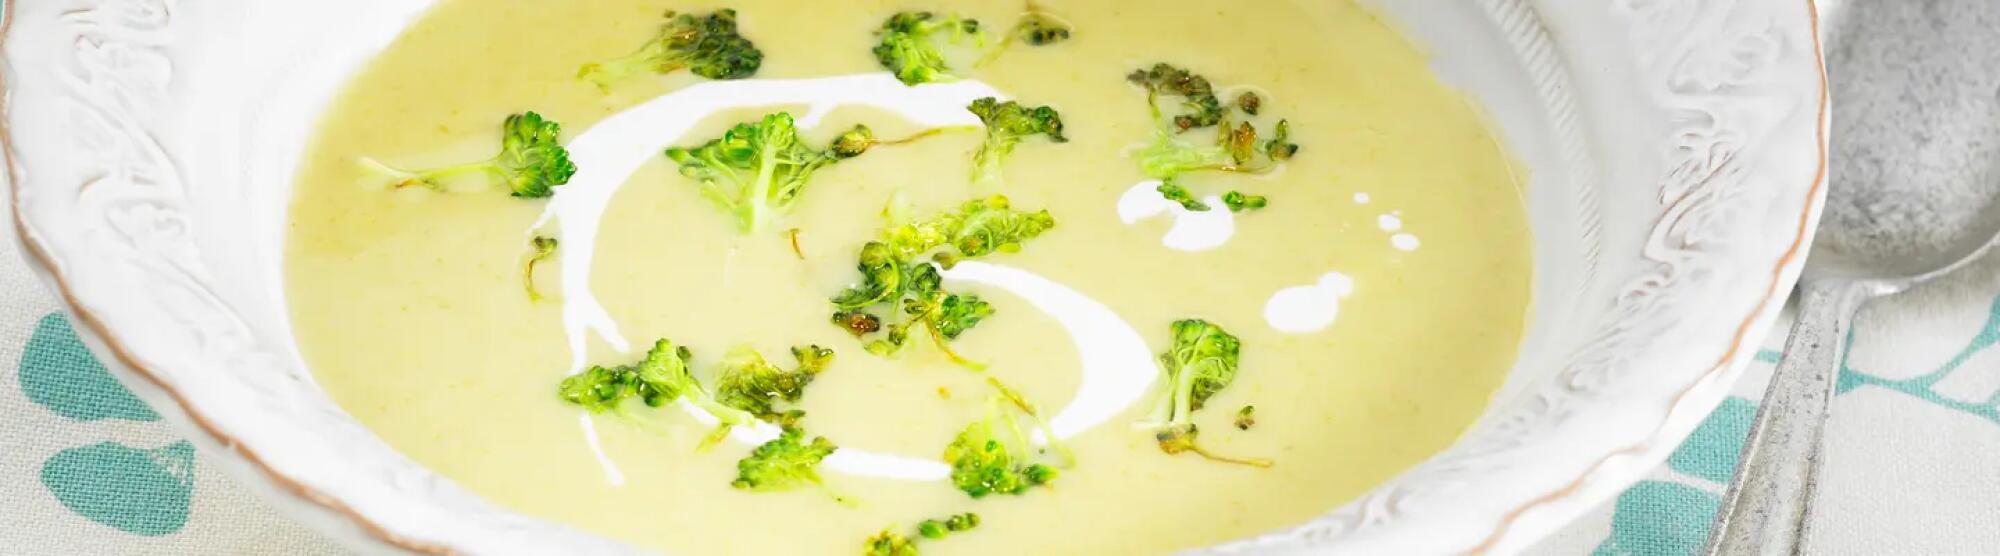 Recette : Velouté de brocolis au fromage frais